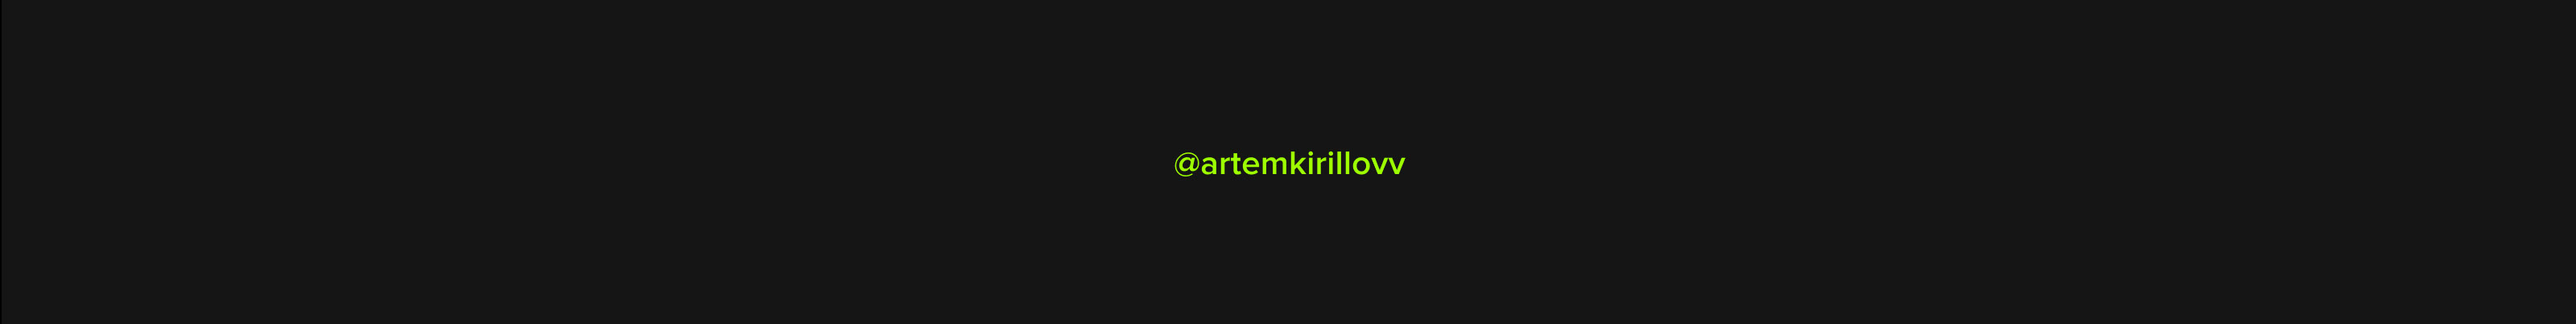 Artem Kirillov のプロファイルバナー